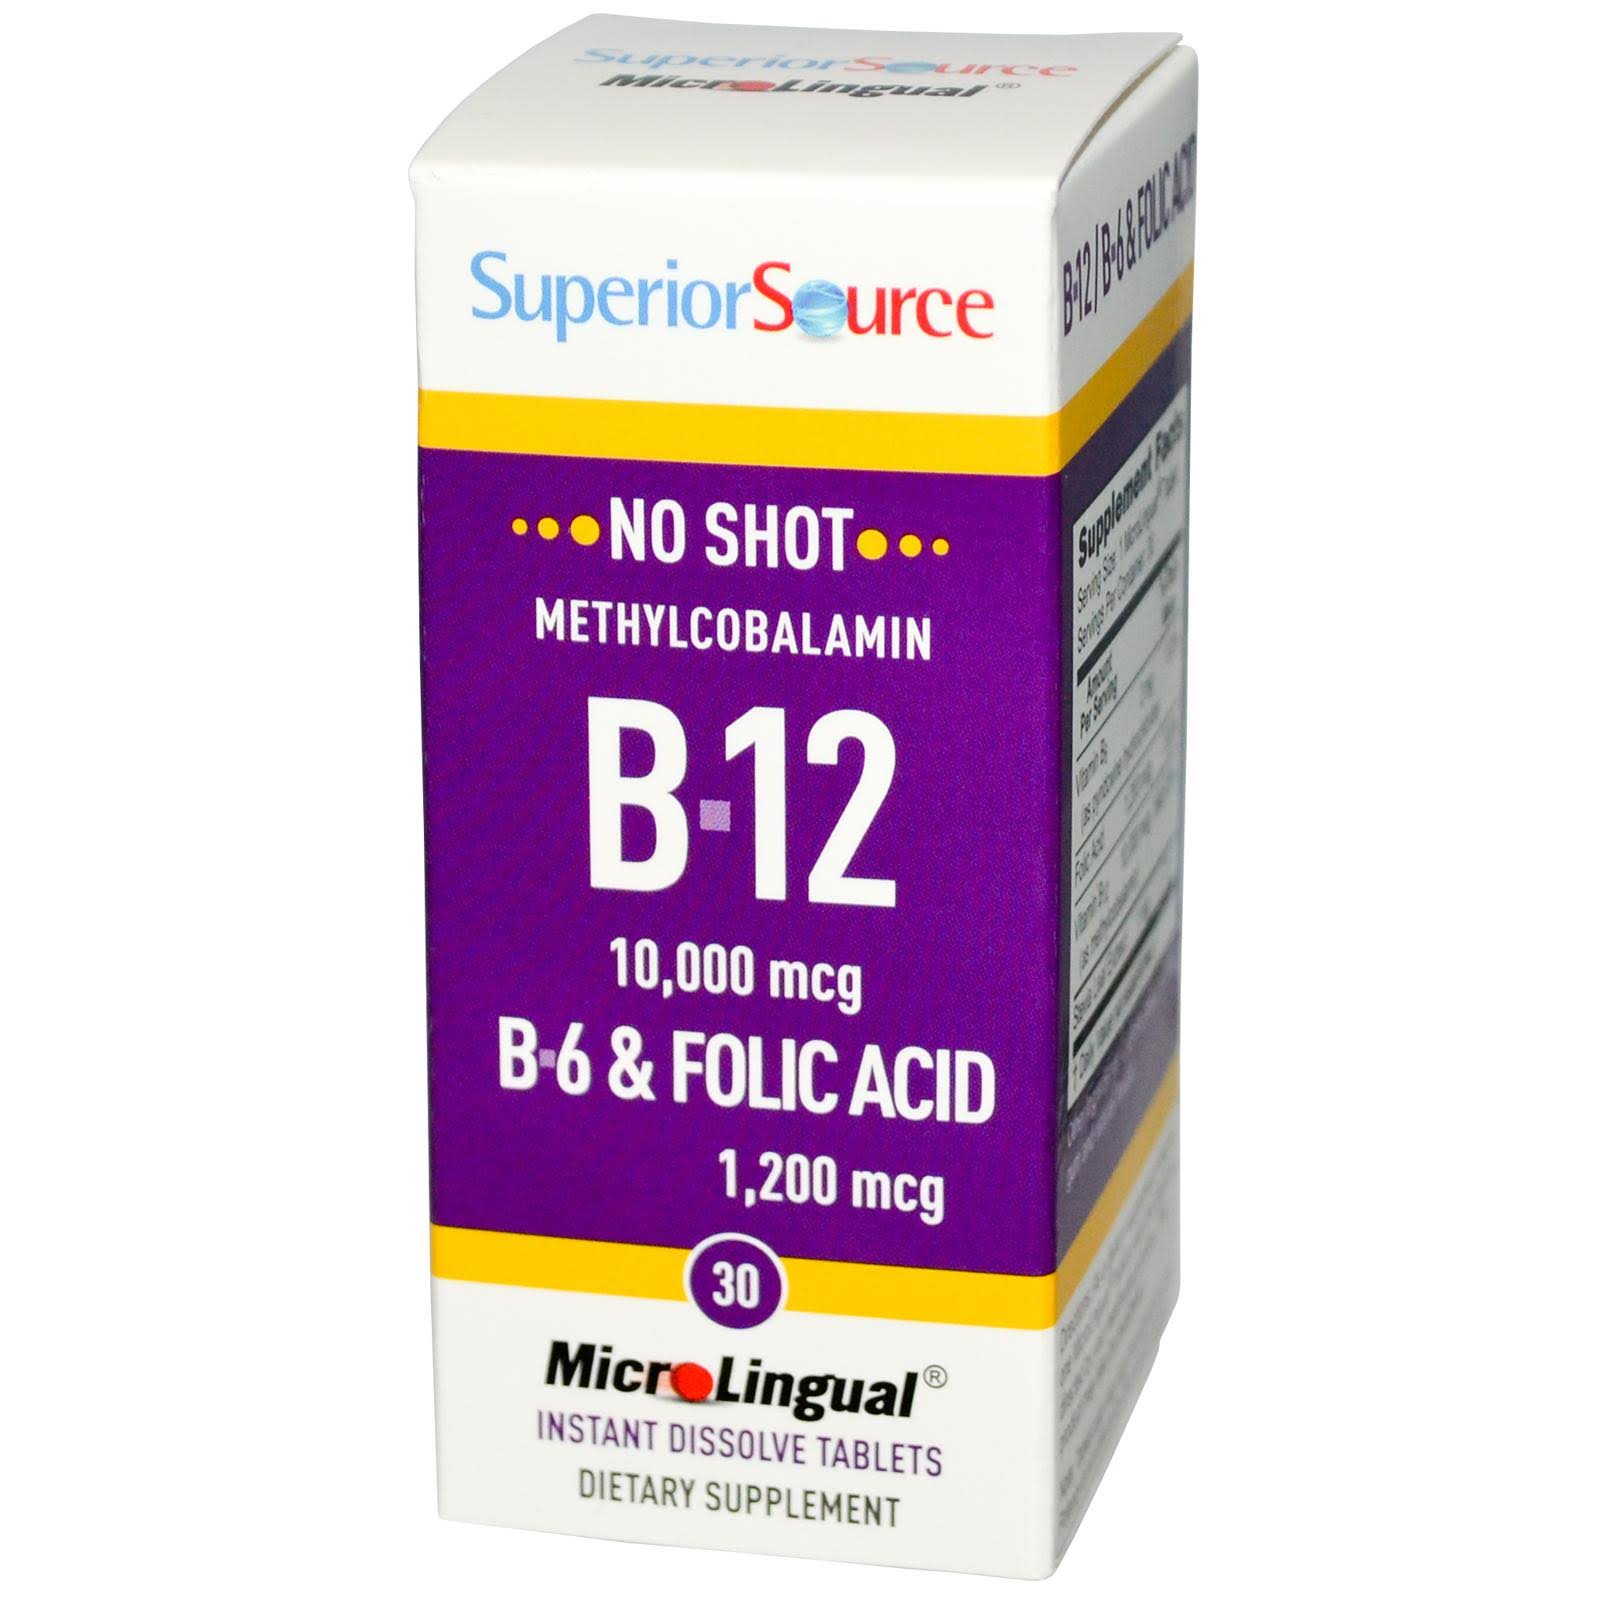 Superior Source No Shot B12 Methylcobalamin 10,000 MCG B6 & Folic Acid